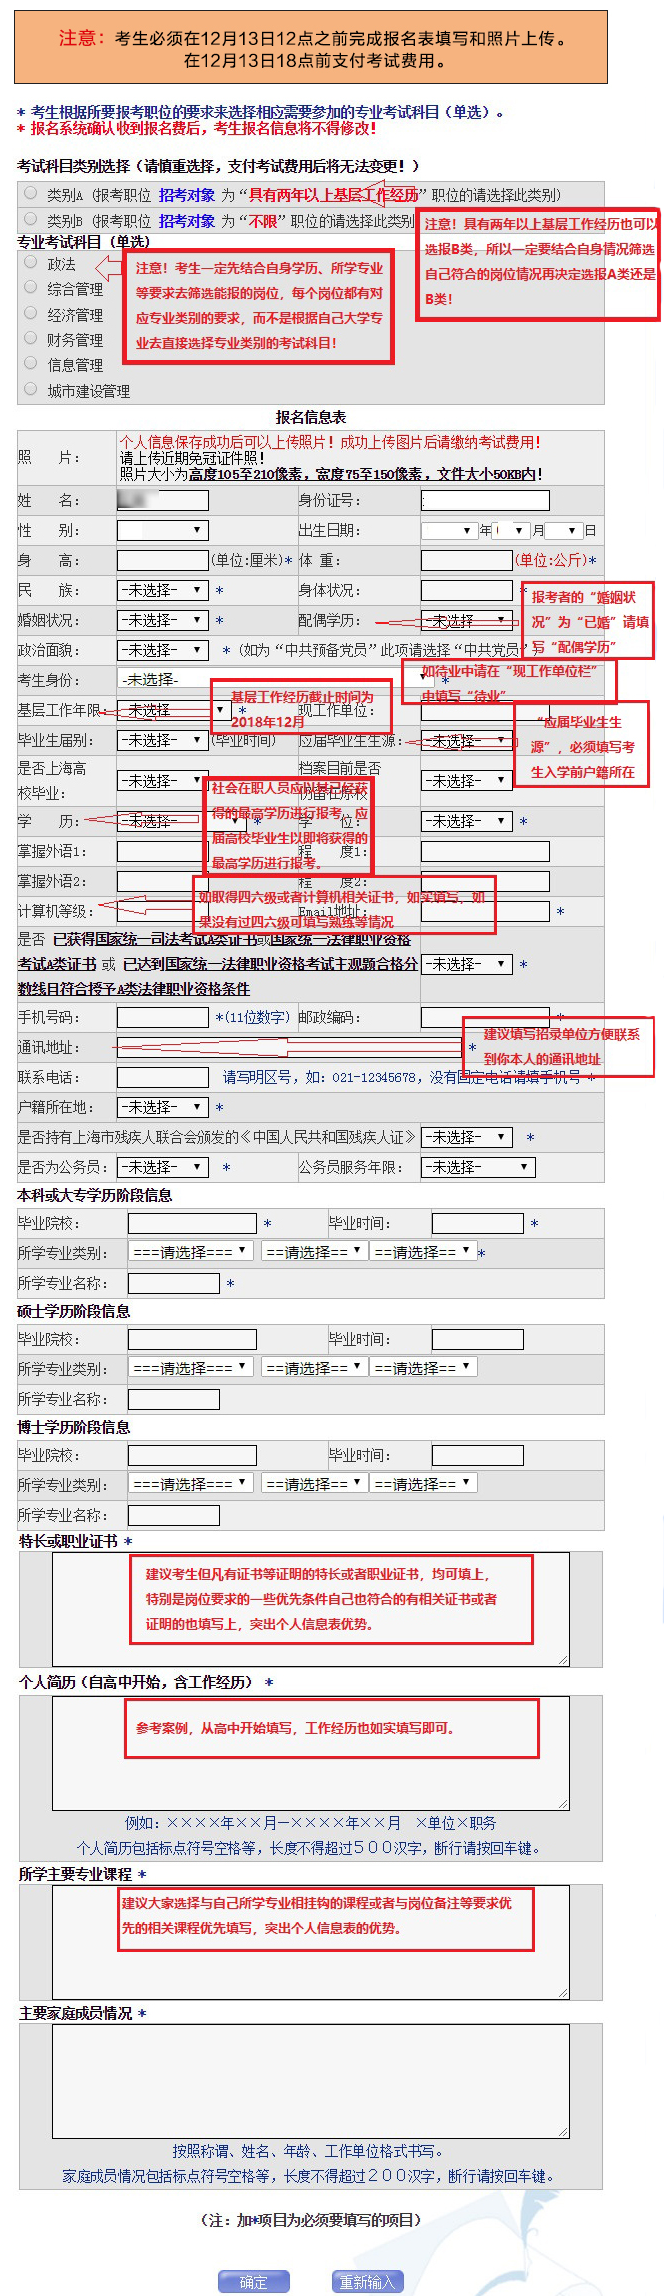 上海公务员考试报名首日注册人数已破1.4万